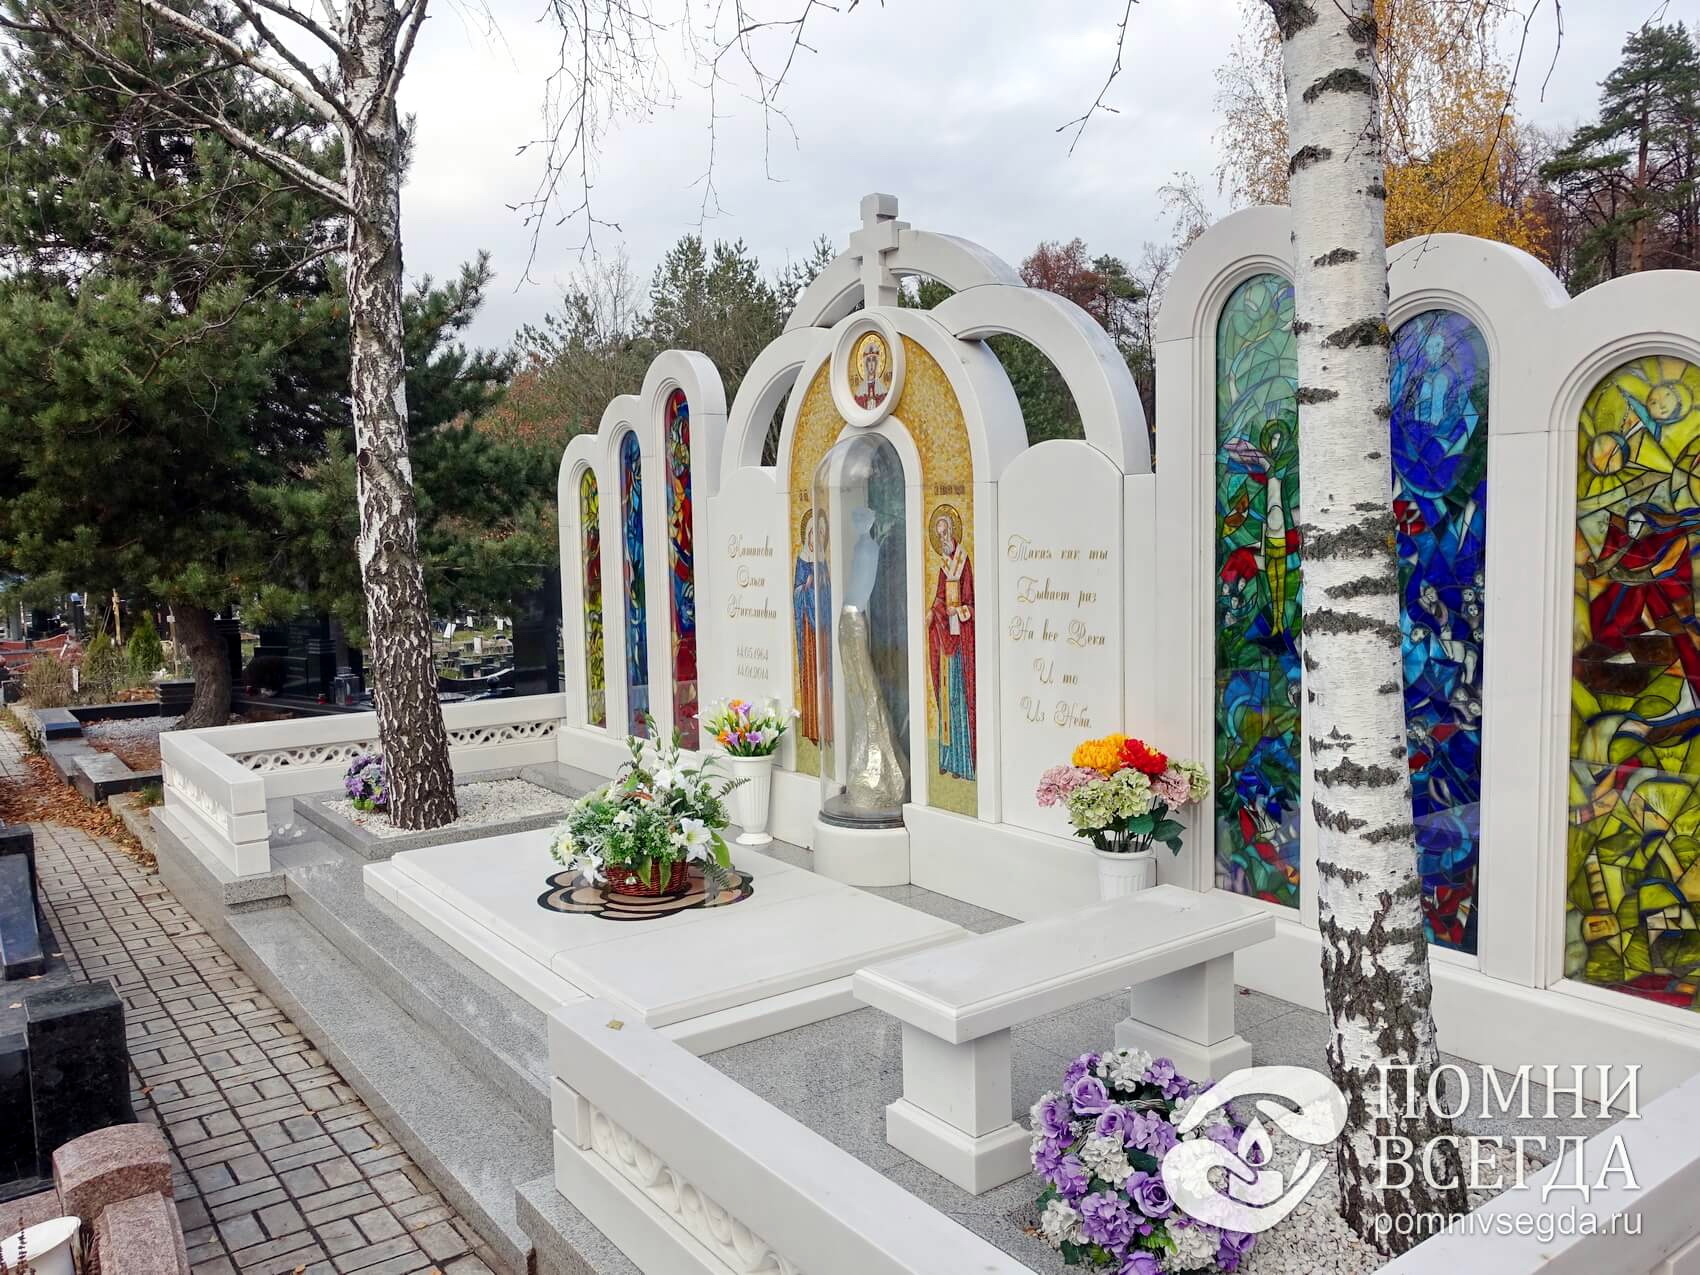 Сложная мемориальная композиция в православном стиле из белого мрамора